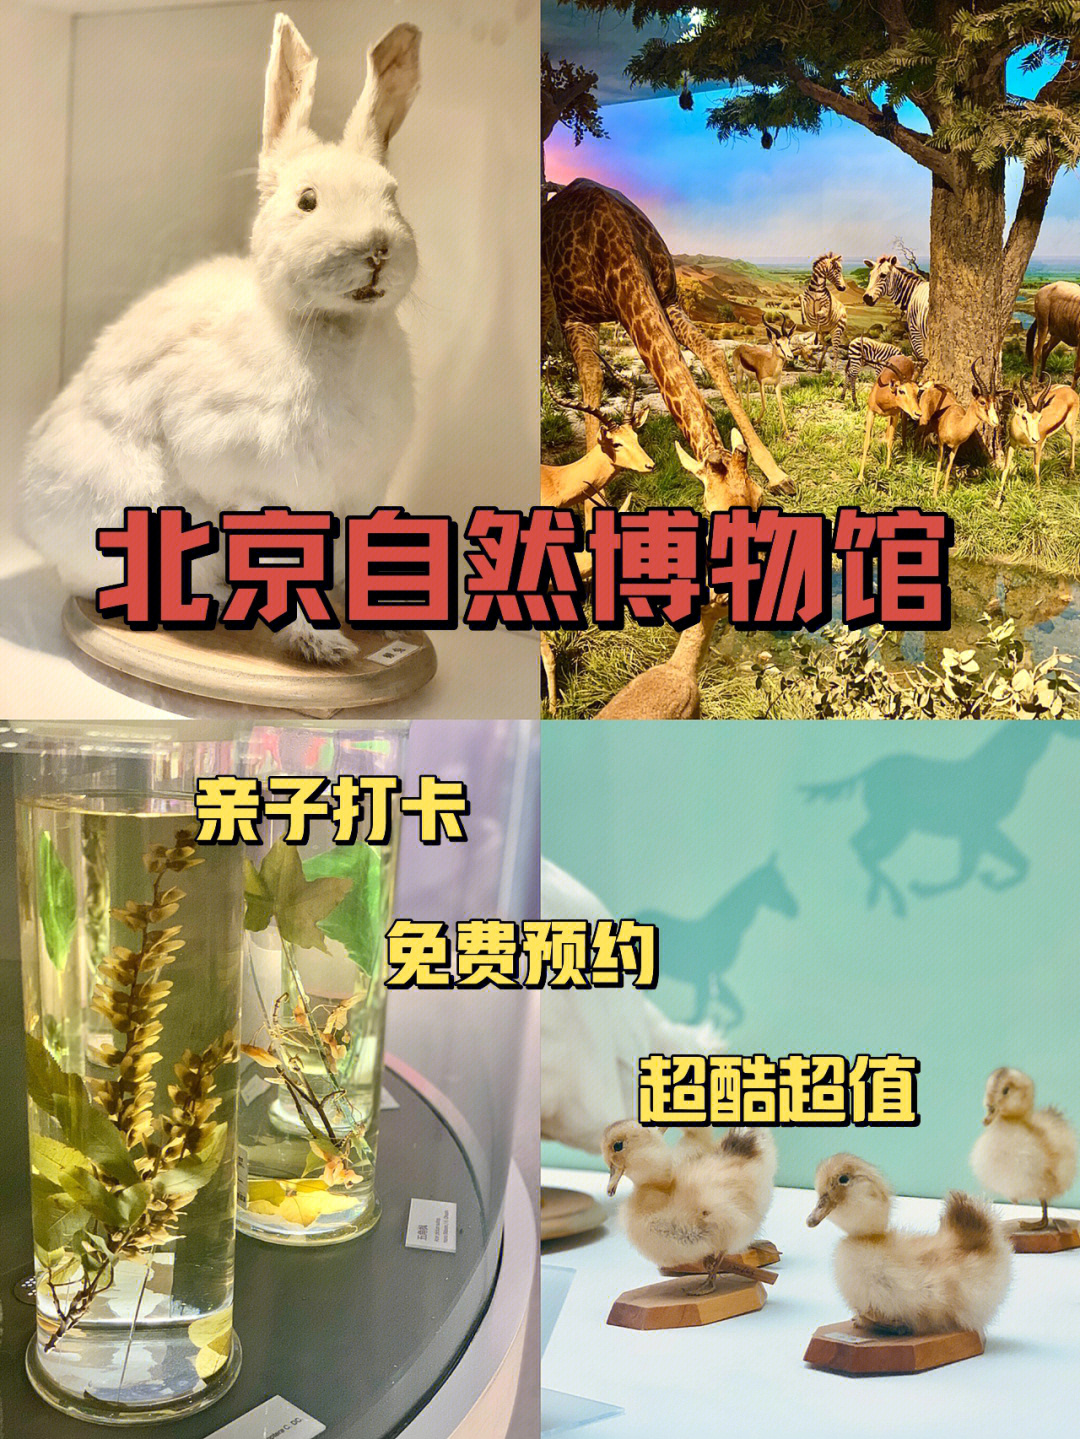 终于打卡了号称北京最难预约的博物馆——北京自然博物馆强烈推荐75